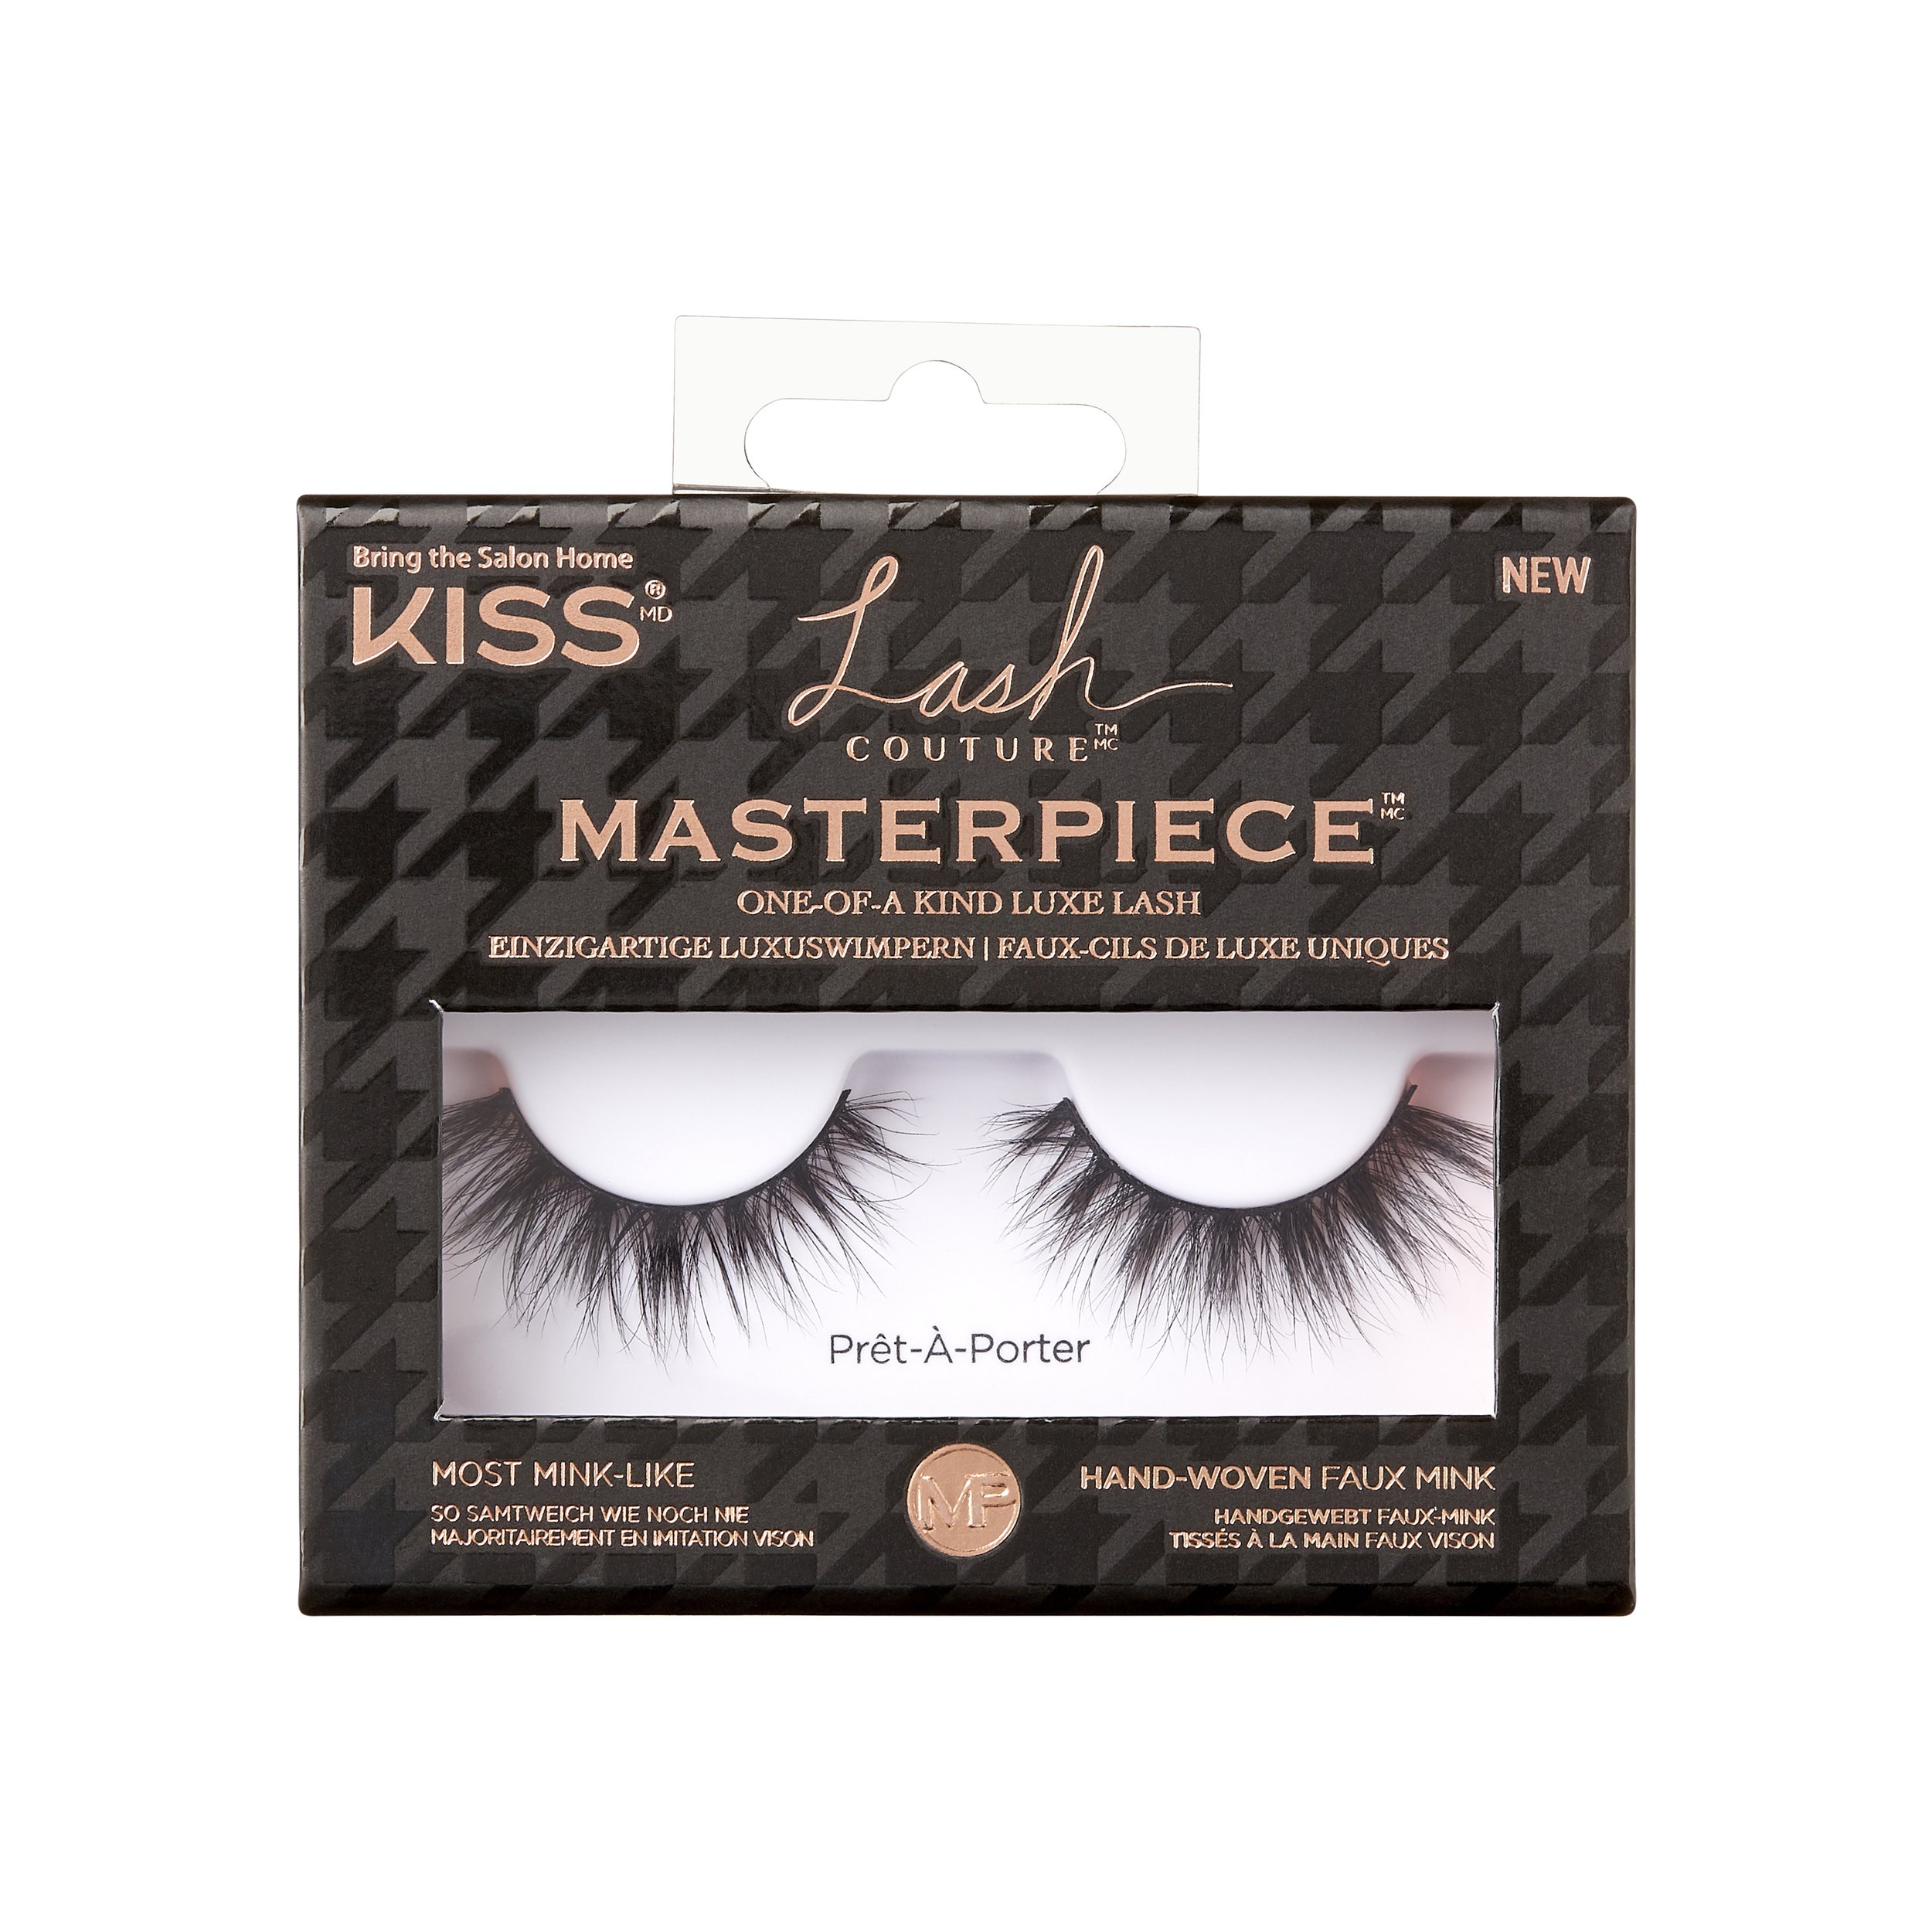 Kiss Masterpiece Lash Pret-A-Porter €11.75